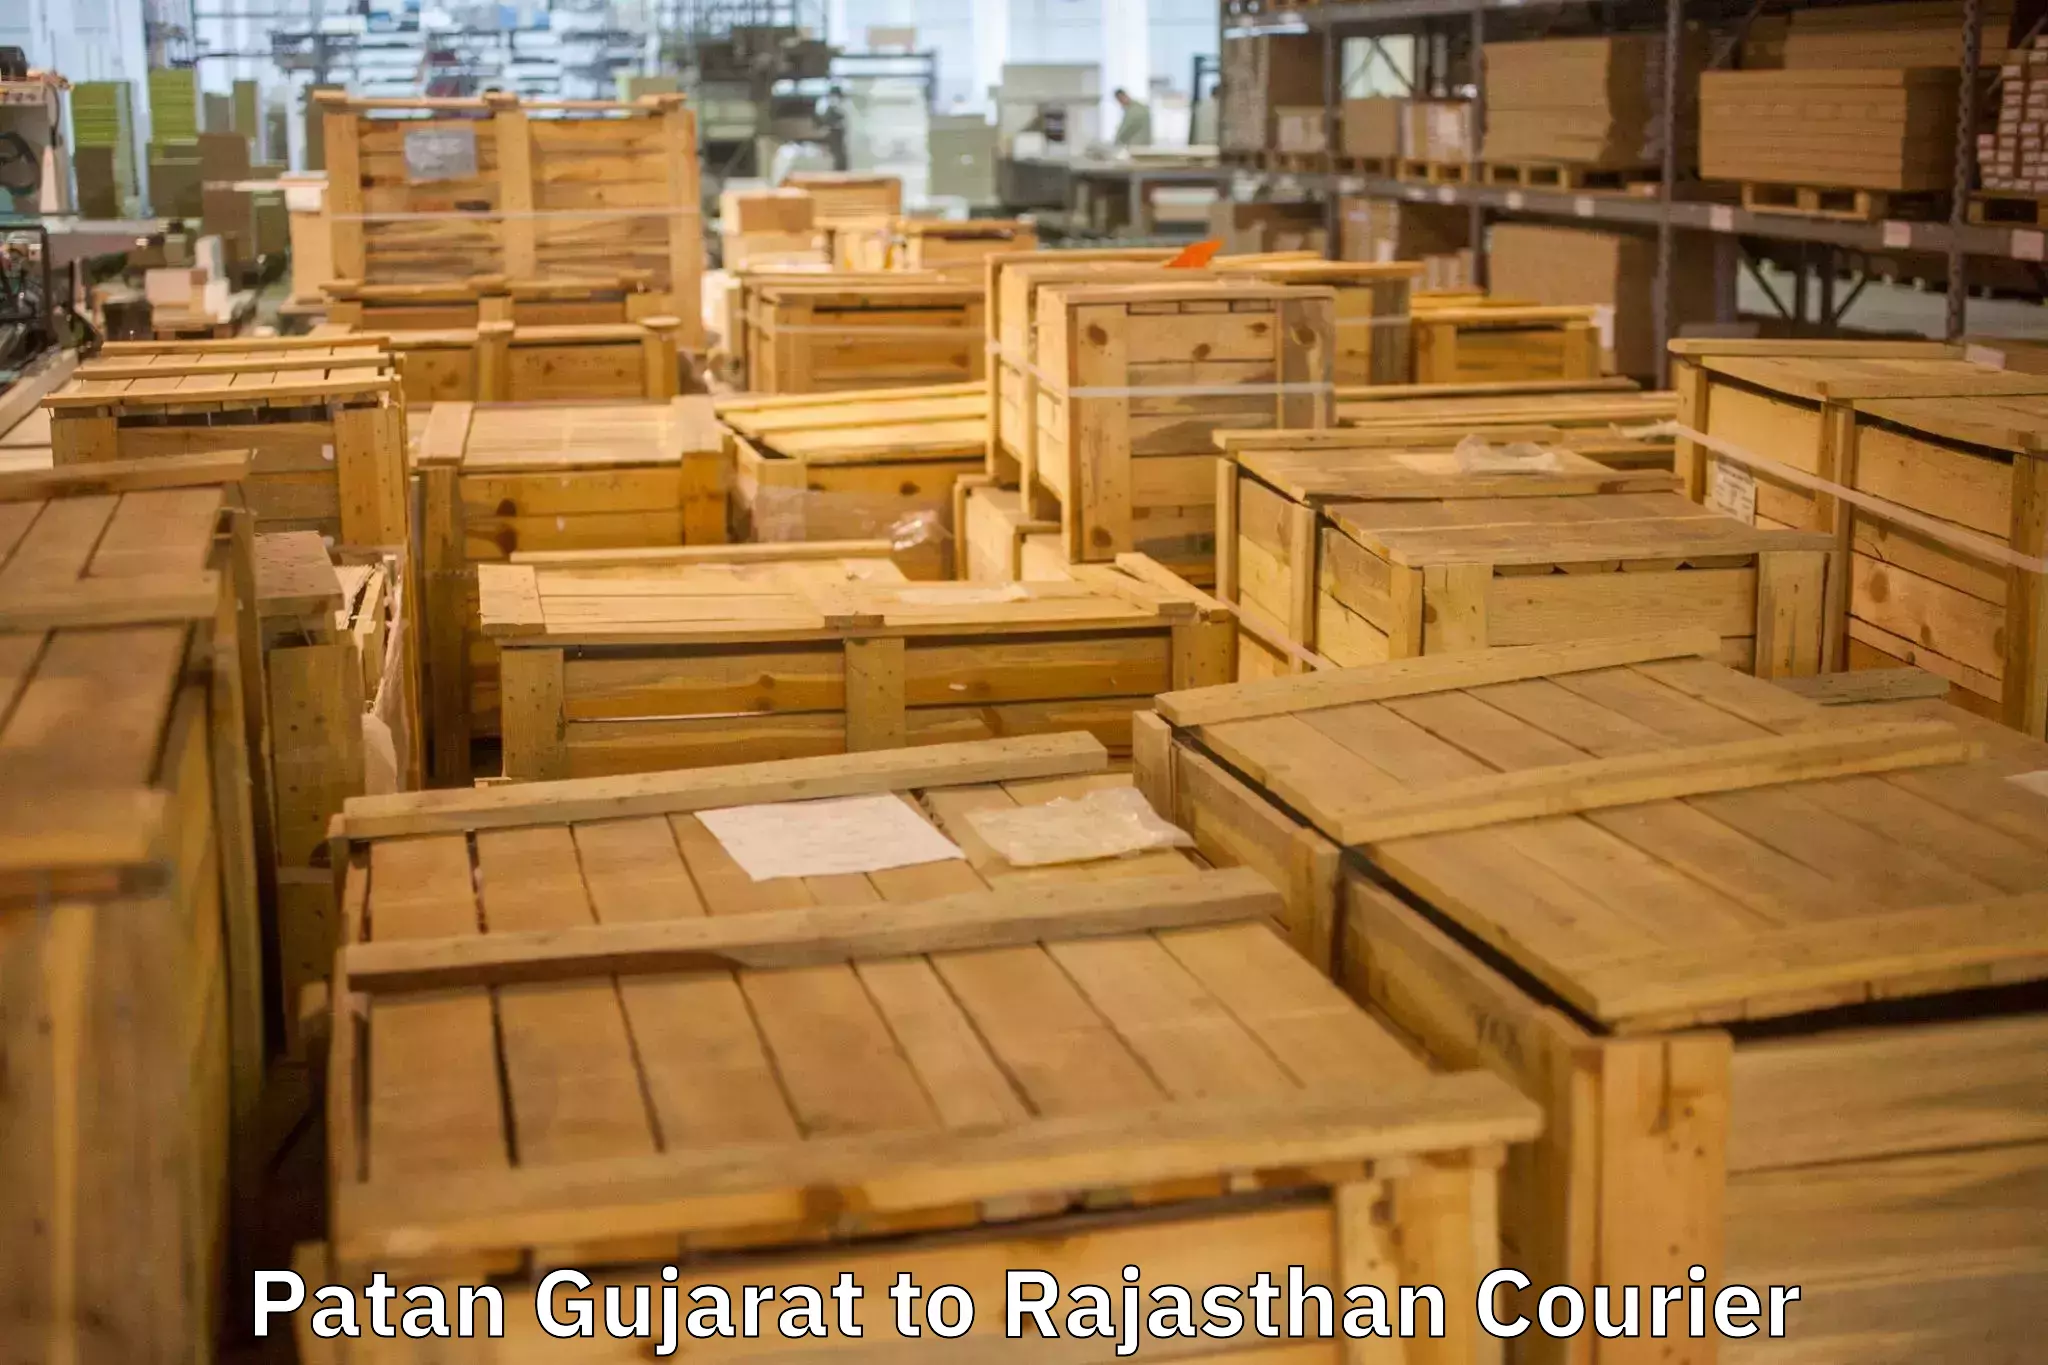 Dependable furniture transport Patan Gujarat to Rajasthan